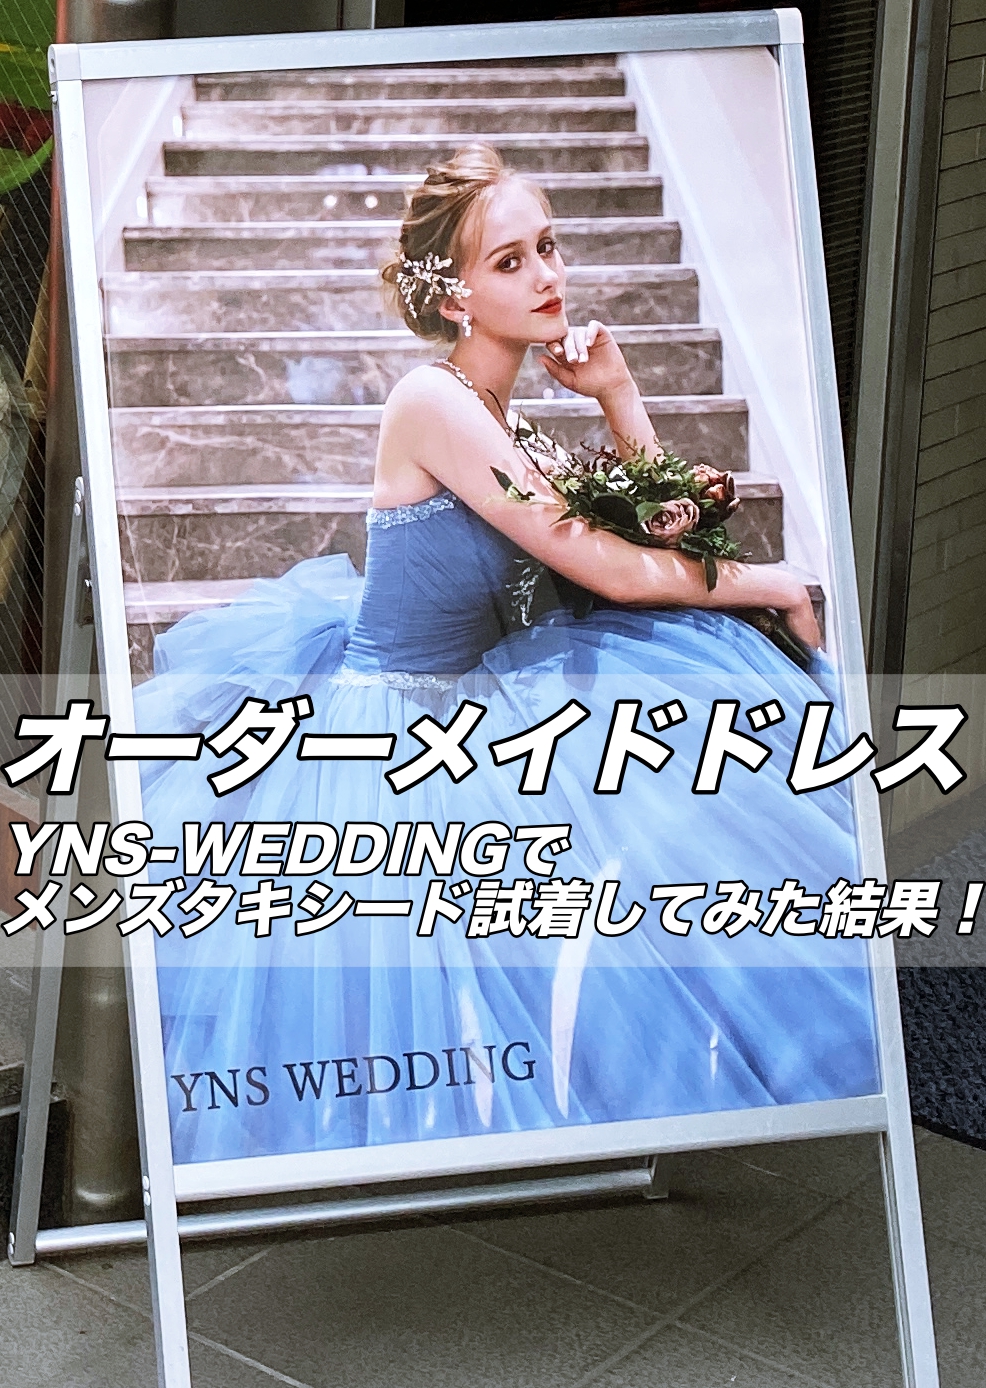 オーダーメイドドレス 代々木yns Weddingでメンズタキシードを試着してみた結果 1時間で3着着れる 7万円代 しょーとかっとブログ